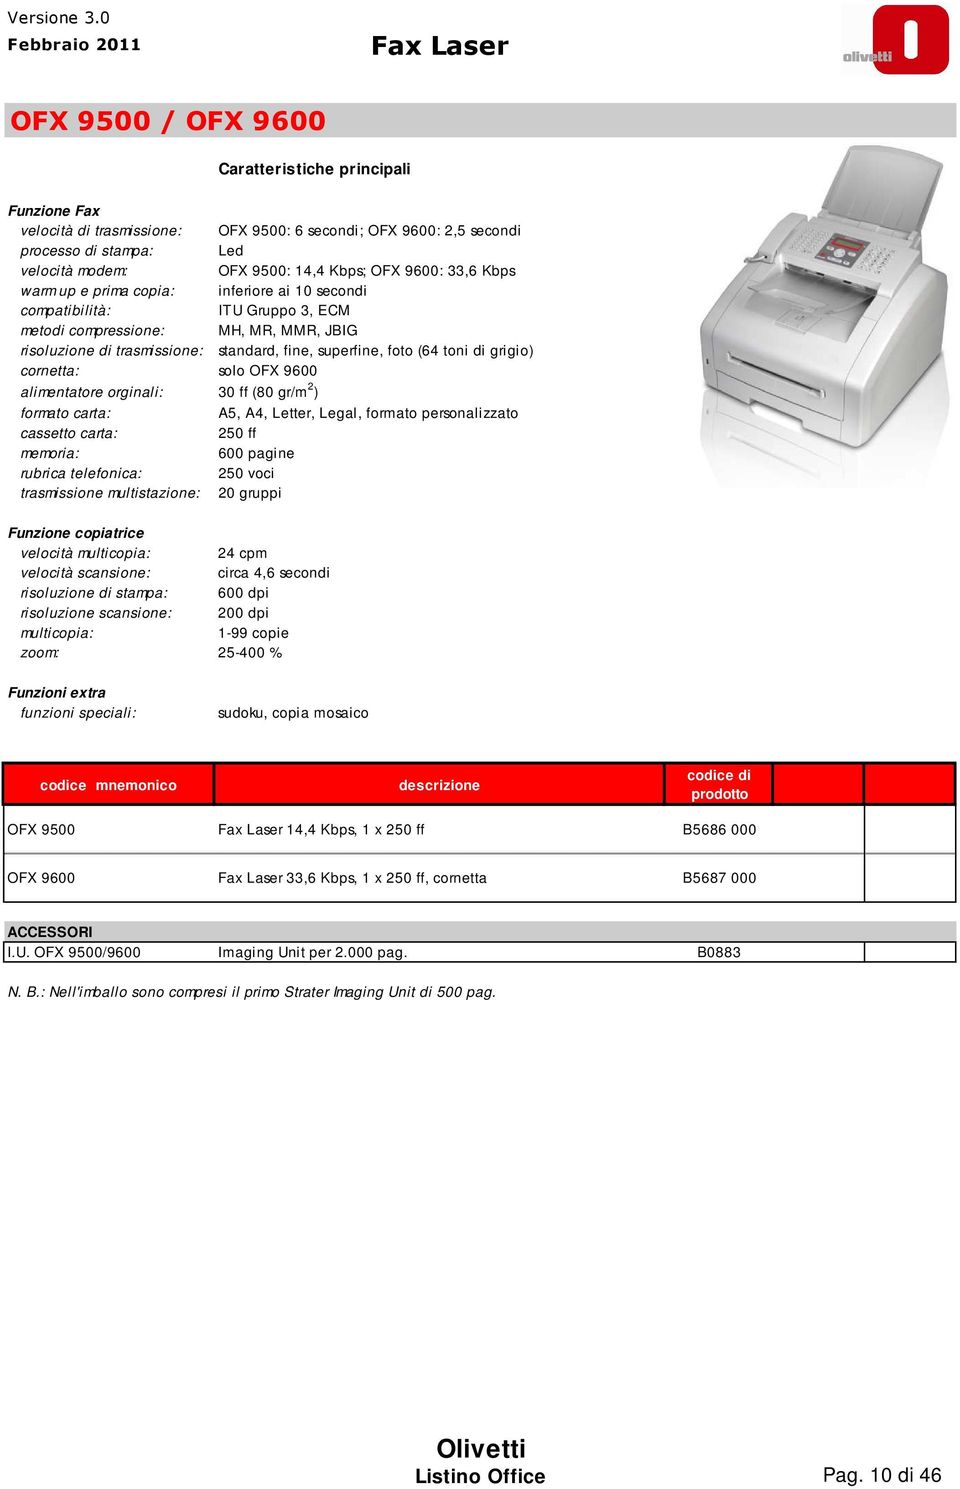 cornetta: solo OFX 9600 alimentatore orginali: 30 ff (80 gr/m 2 ) formato carta: cassetto carta: rubrica telefonica: trasmissione multistazione: Funzione copiatrice velocità multicopia: 24 cpm